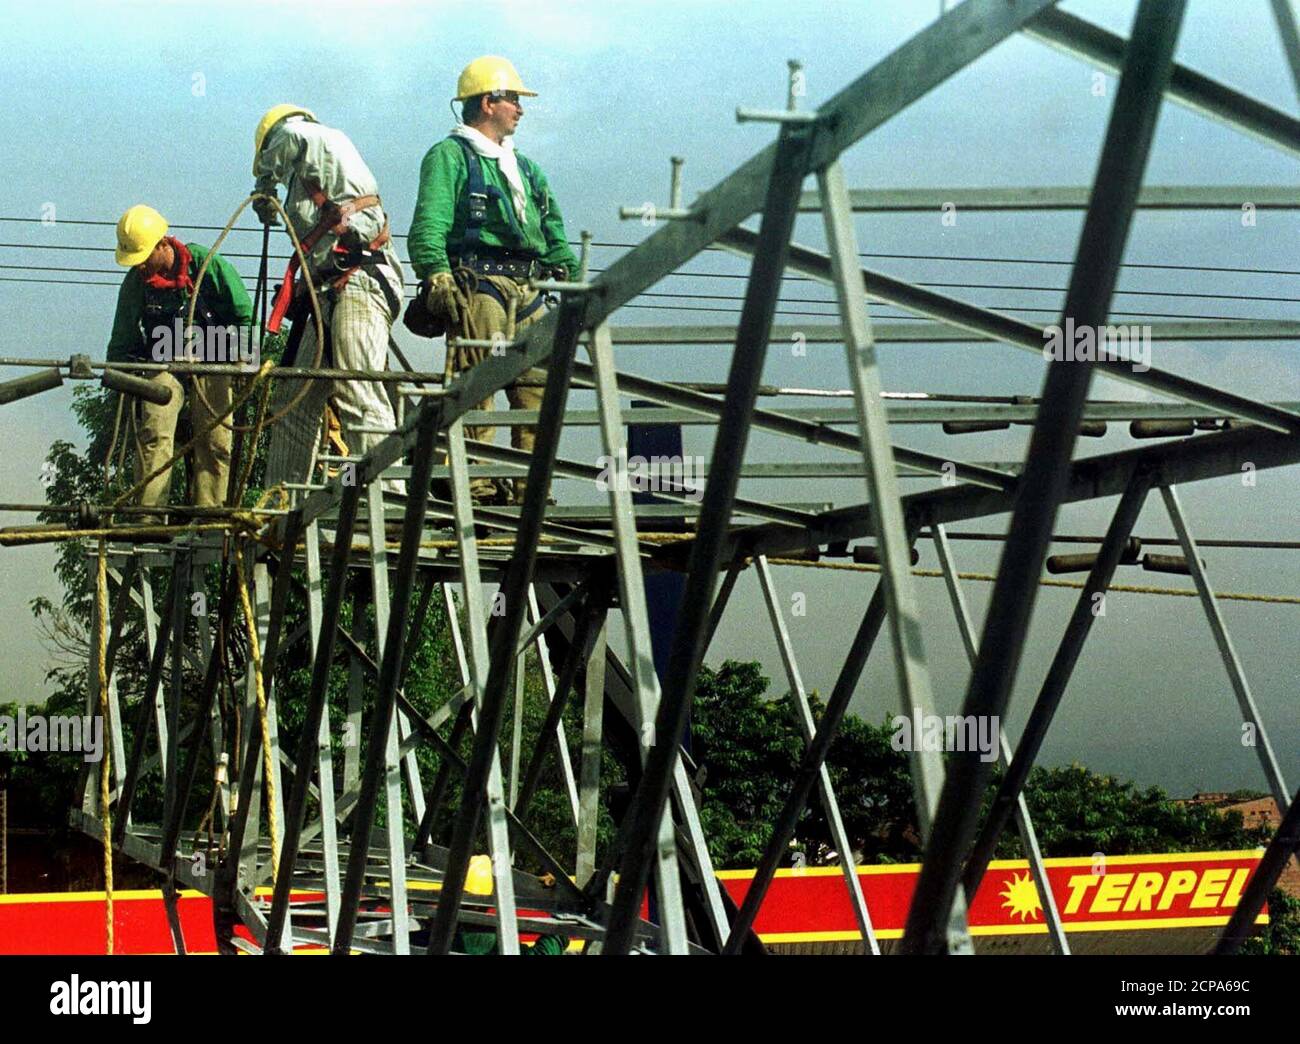 Arbeiter reparieren elektrische Masten, nachdem eine Bombe in Medellin, Antioquia, einer Provinz nordwestlich von Bogota, explodierte, 3. August 2000. Mutmaßliche marxistische Rebellen bombardierten mitten in einem nationalen Streik von 700,000 Staatsarbeitern gegen staatliche Sparmaßnahmen einen Hochspannungsmast im Industriesektor von Medellin. JMG/CM Stockfoto